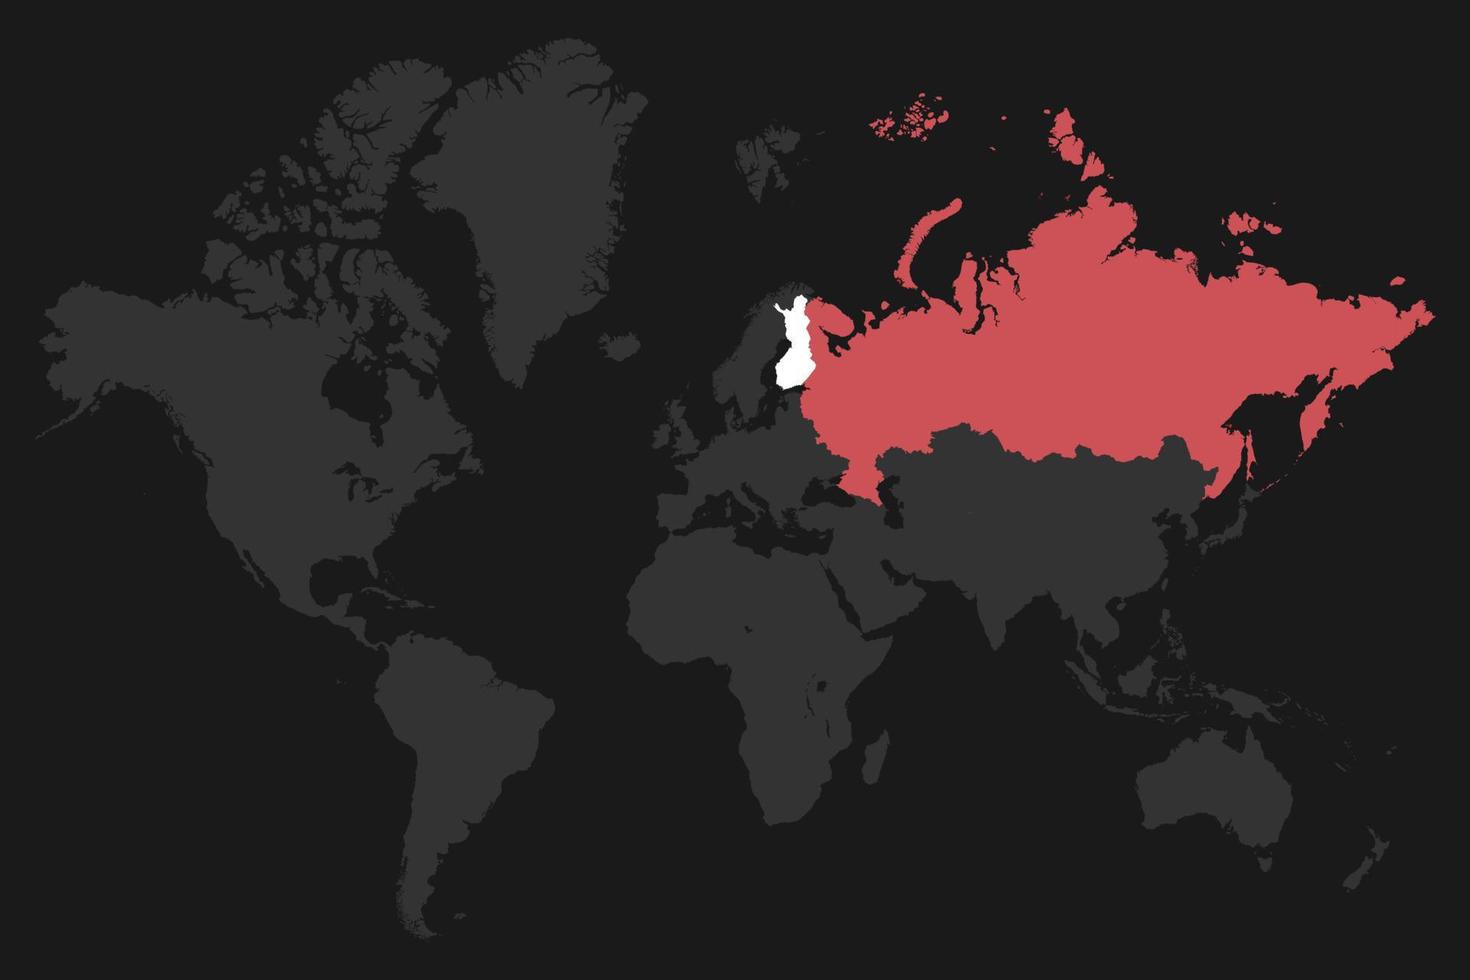 graue weltkarte mit rotem russland und weißer karte finnland. vektor